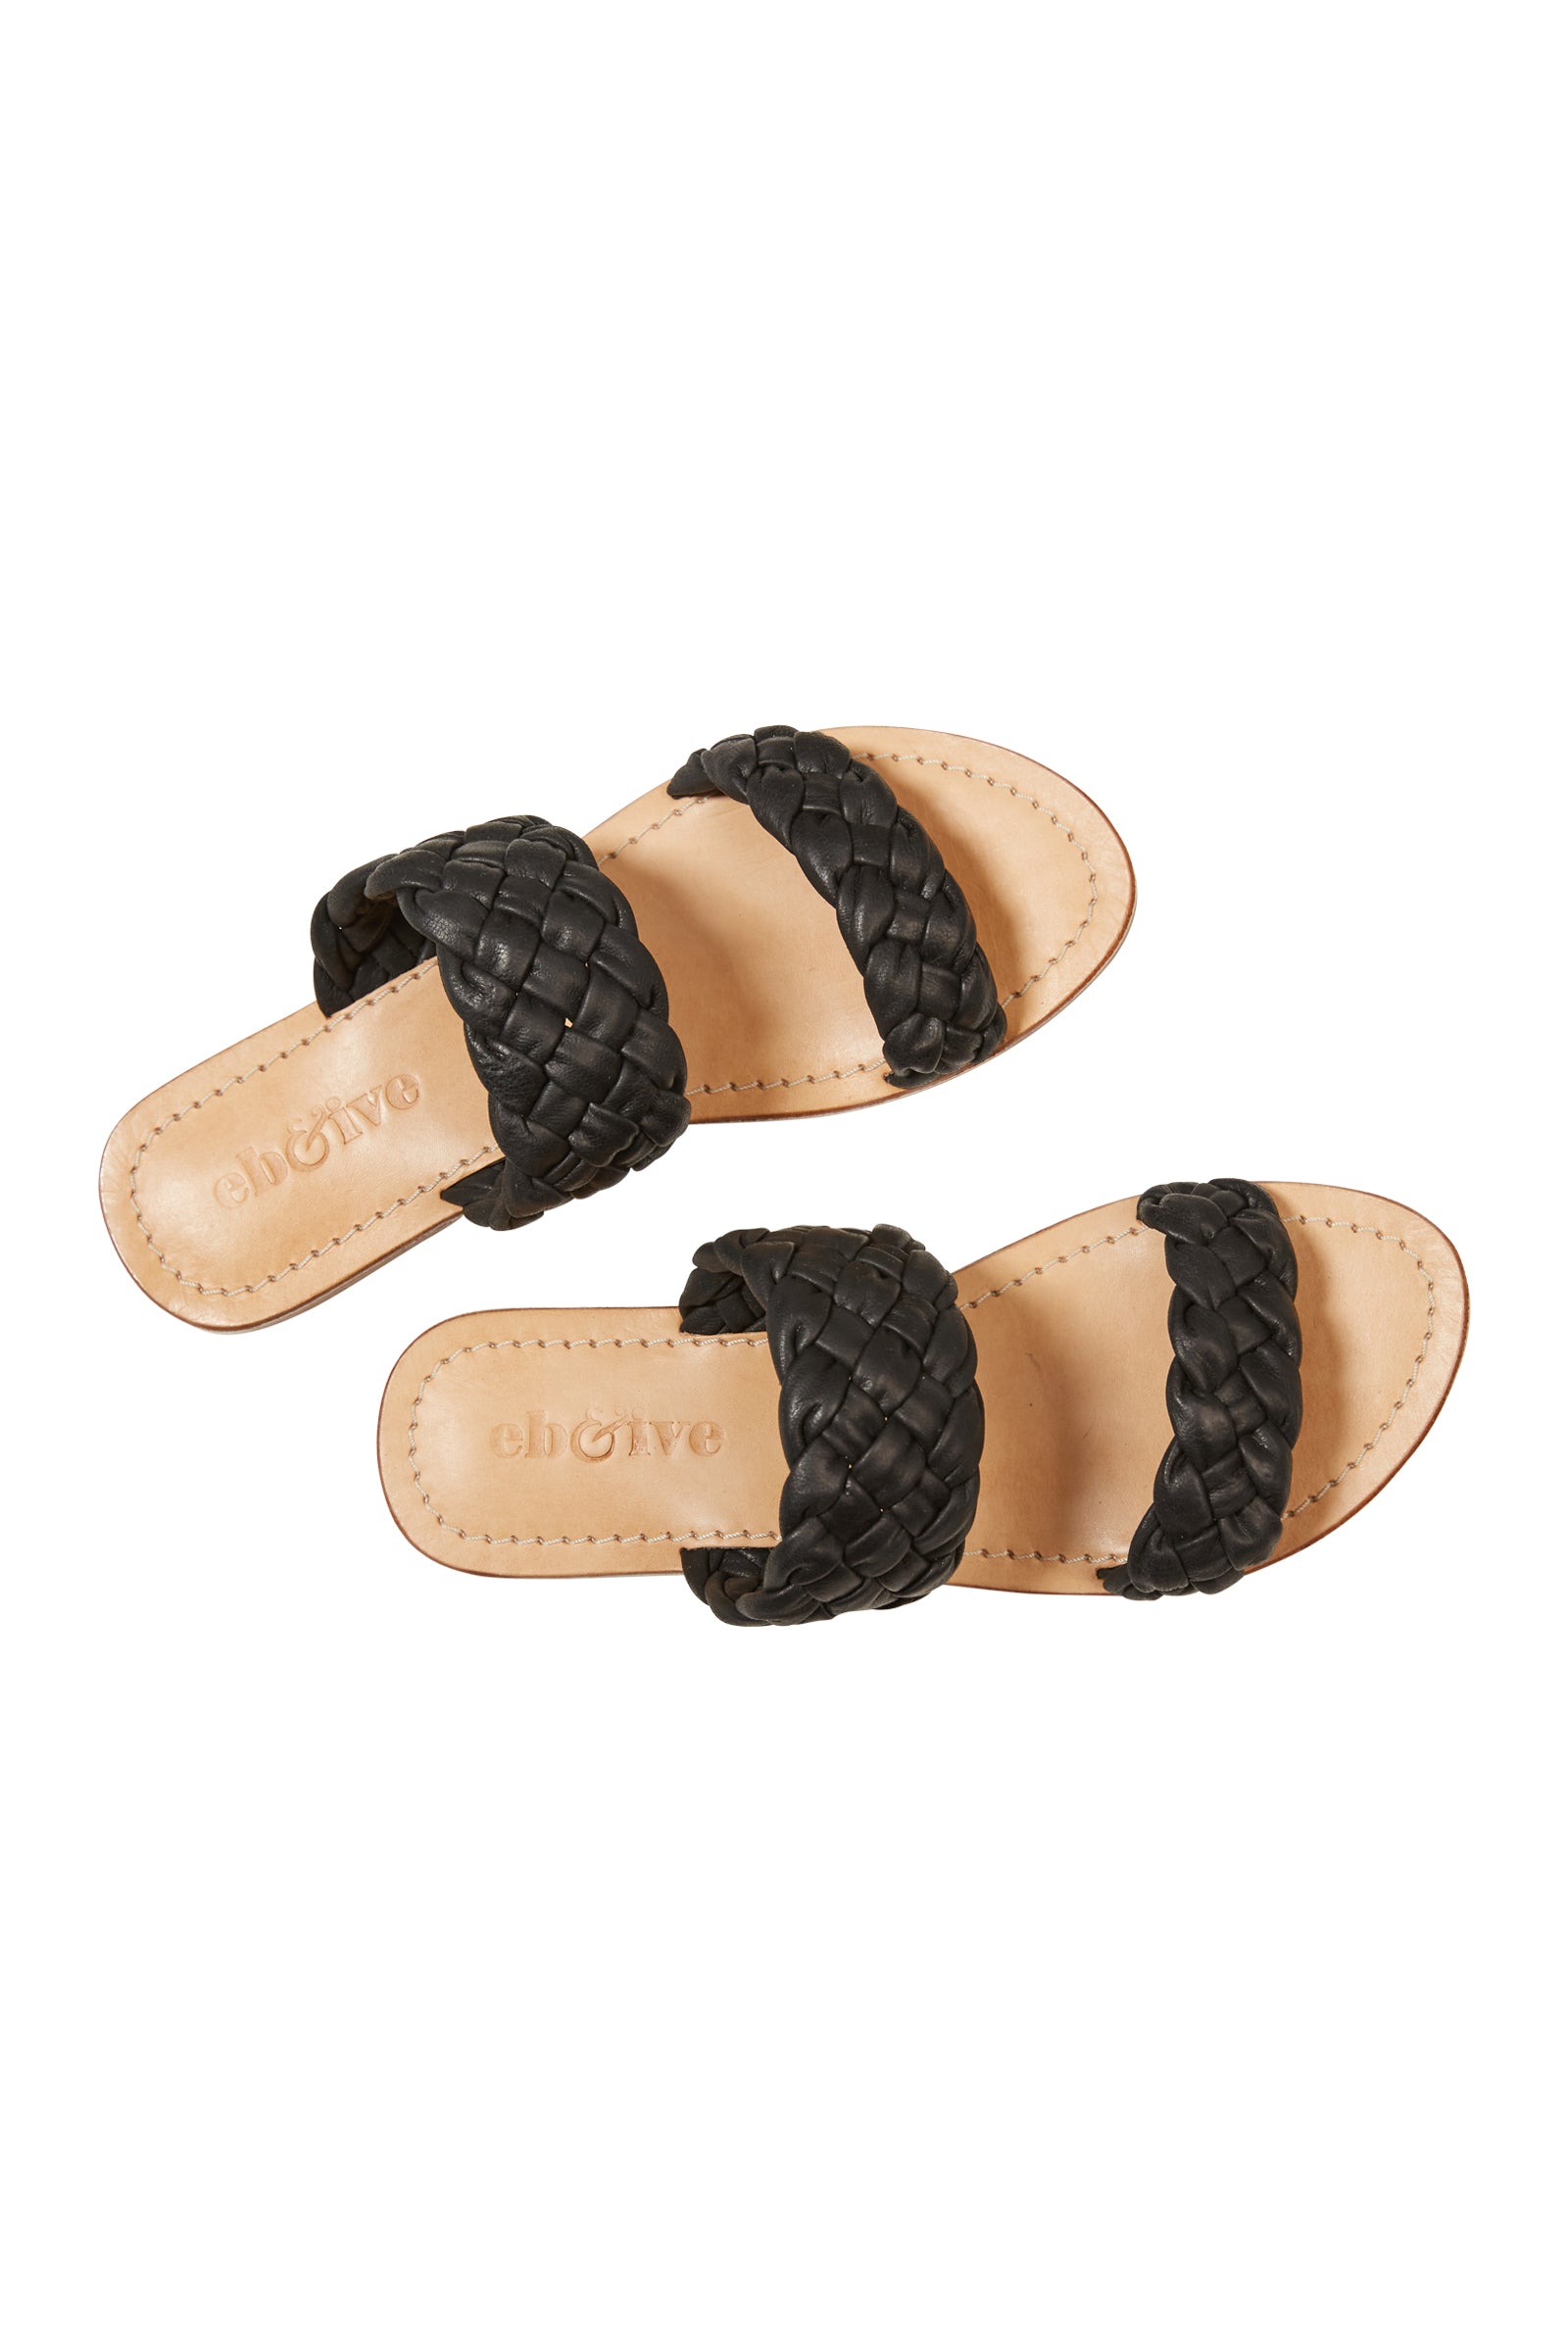 Lotus Slide - Black - eb&ive Footwear - Sandals